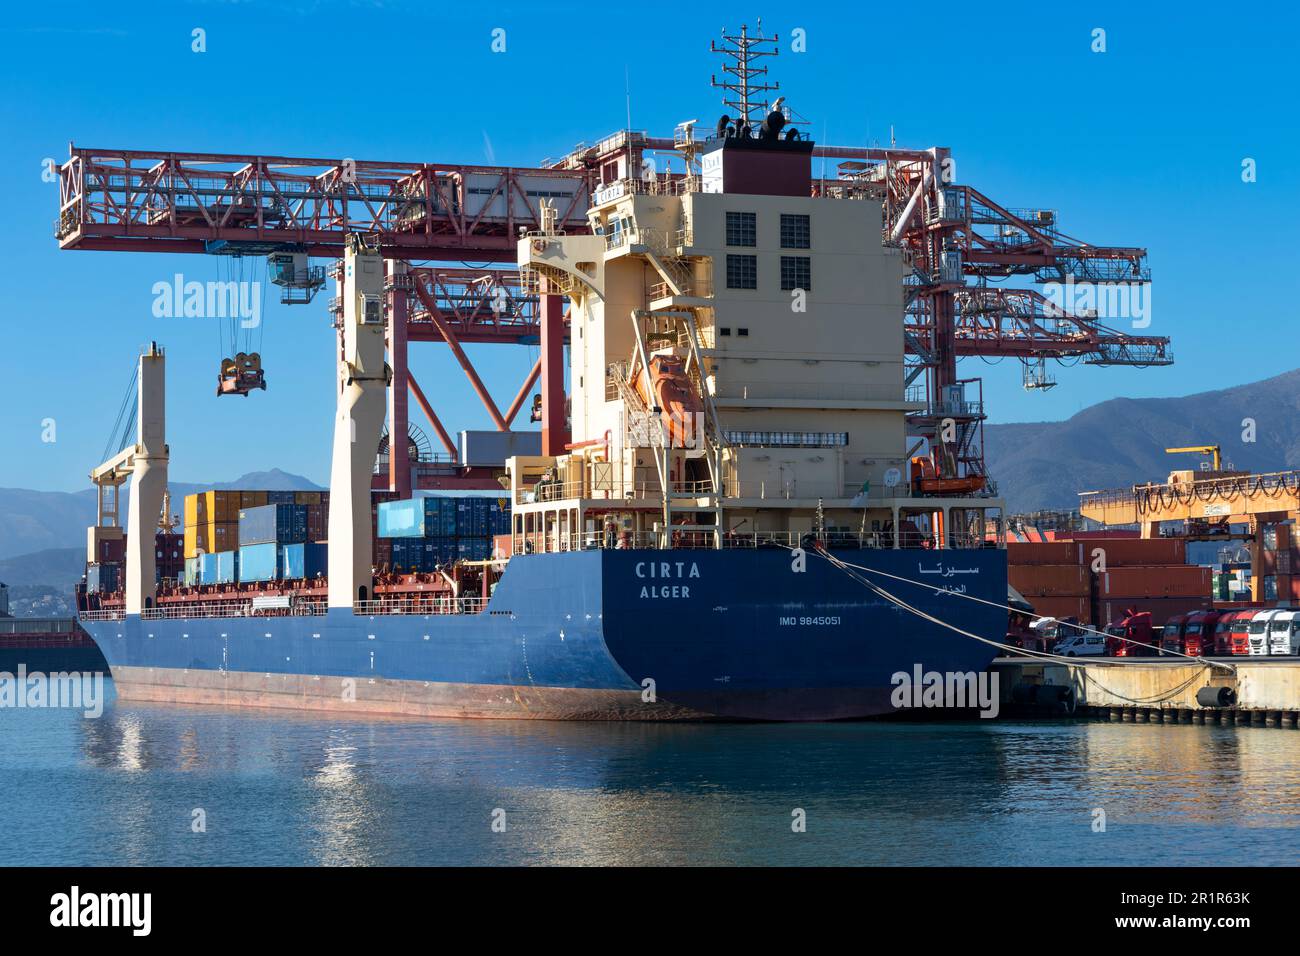 GÉNOVA, ITALIA, 2 DE FEBRERO de 2023 - El barco contaner Cirta Alger amarró en el puerto de Génova, Italia Foto de stock